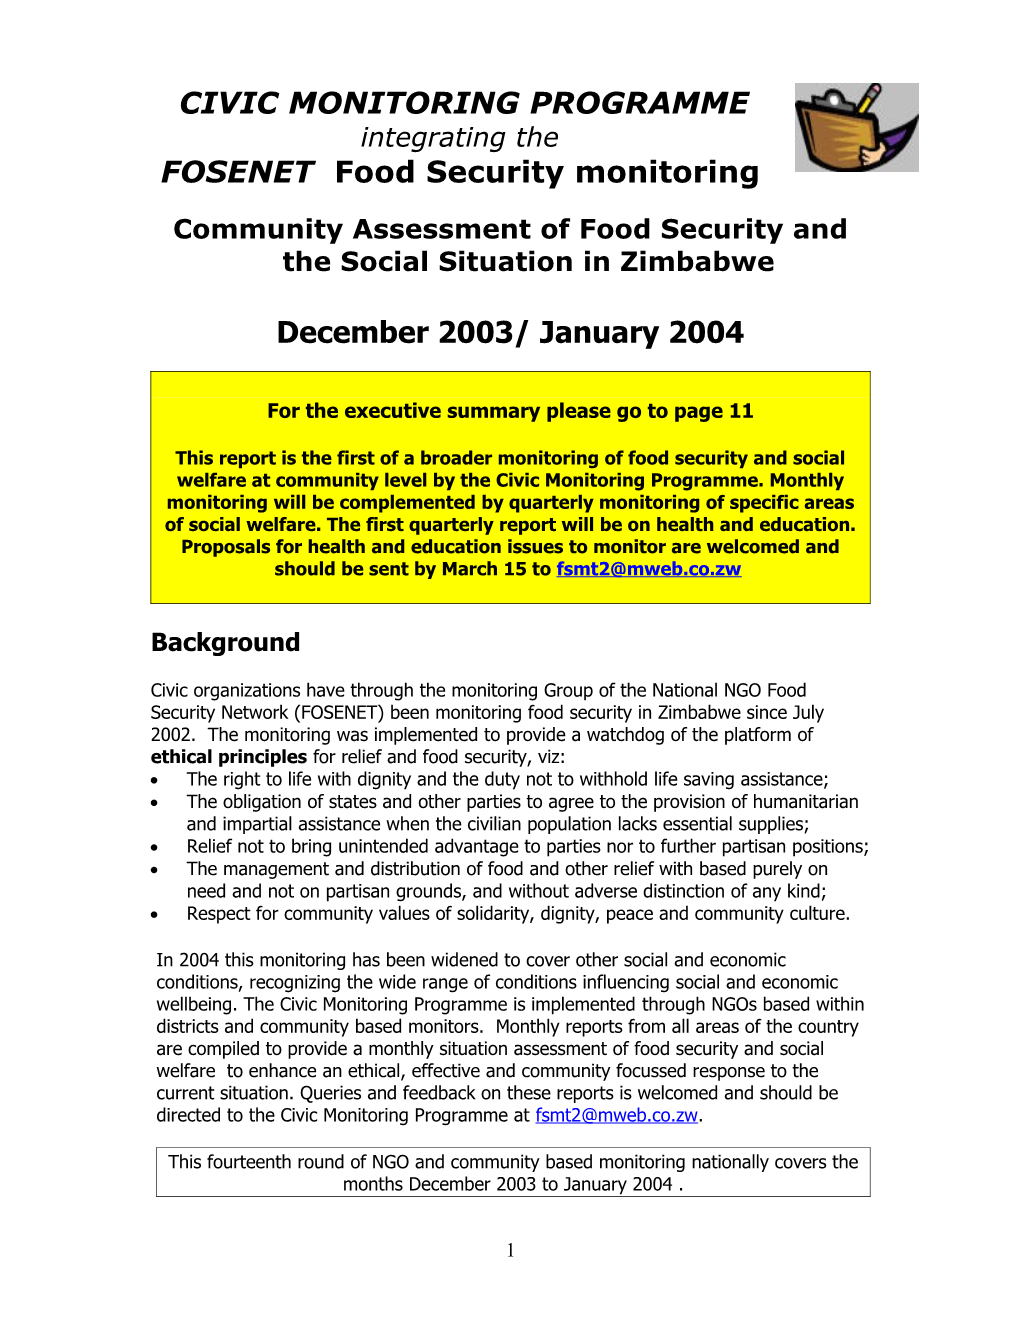 FOSENET NGO Food Security Network